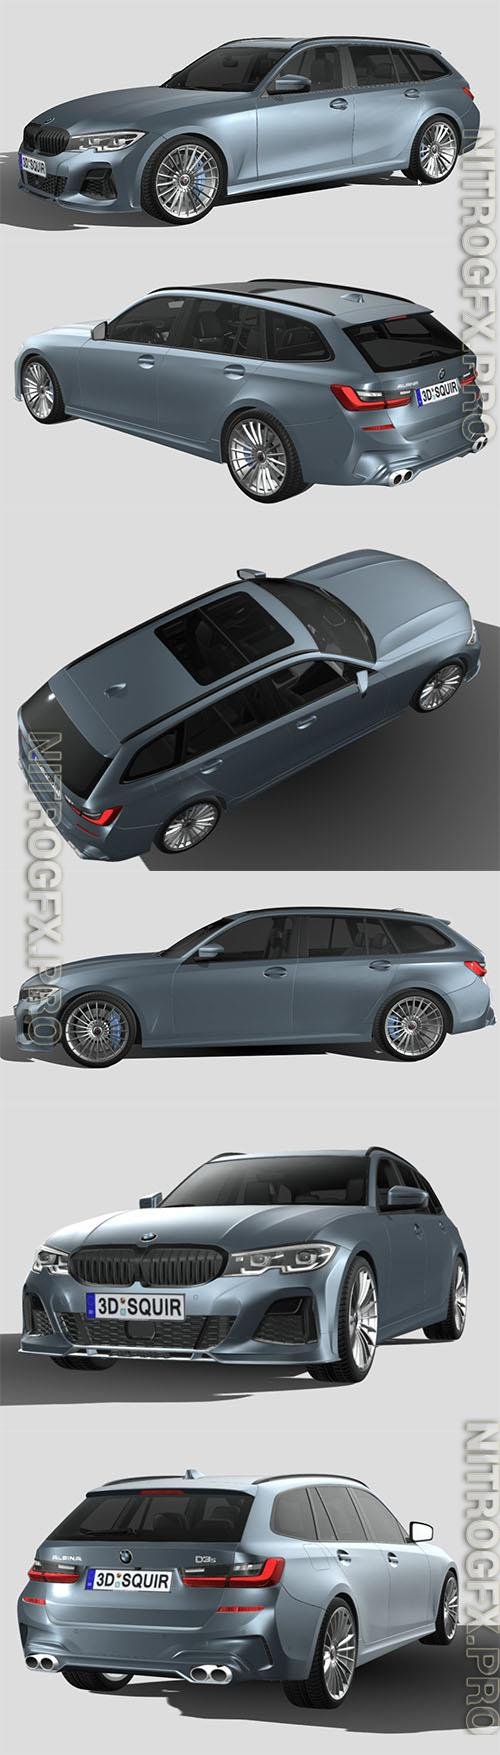 BMW Alpina D3 S touring 2020 3D Models